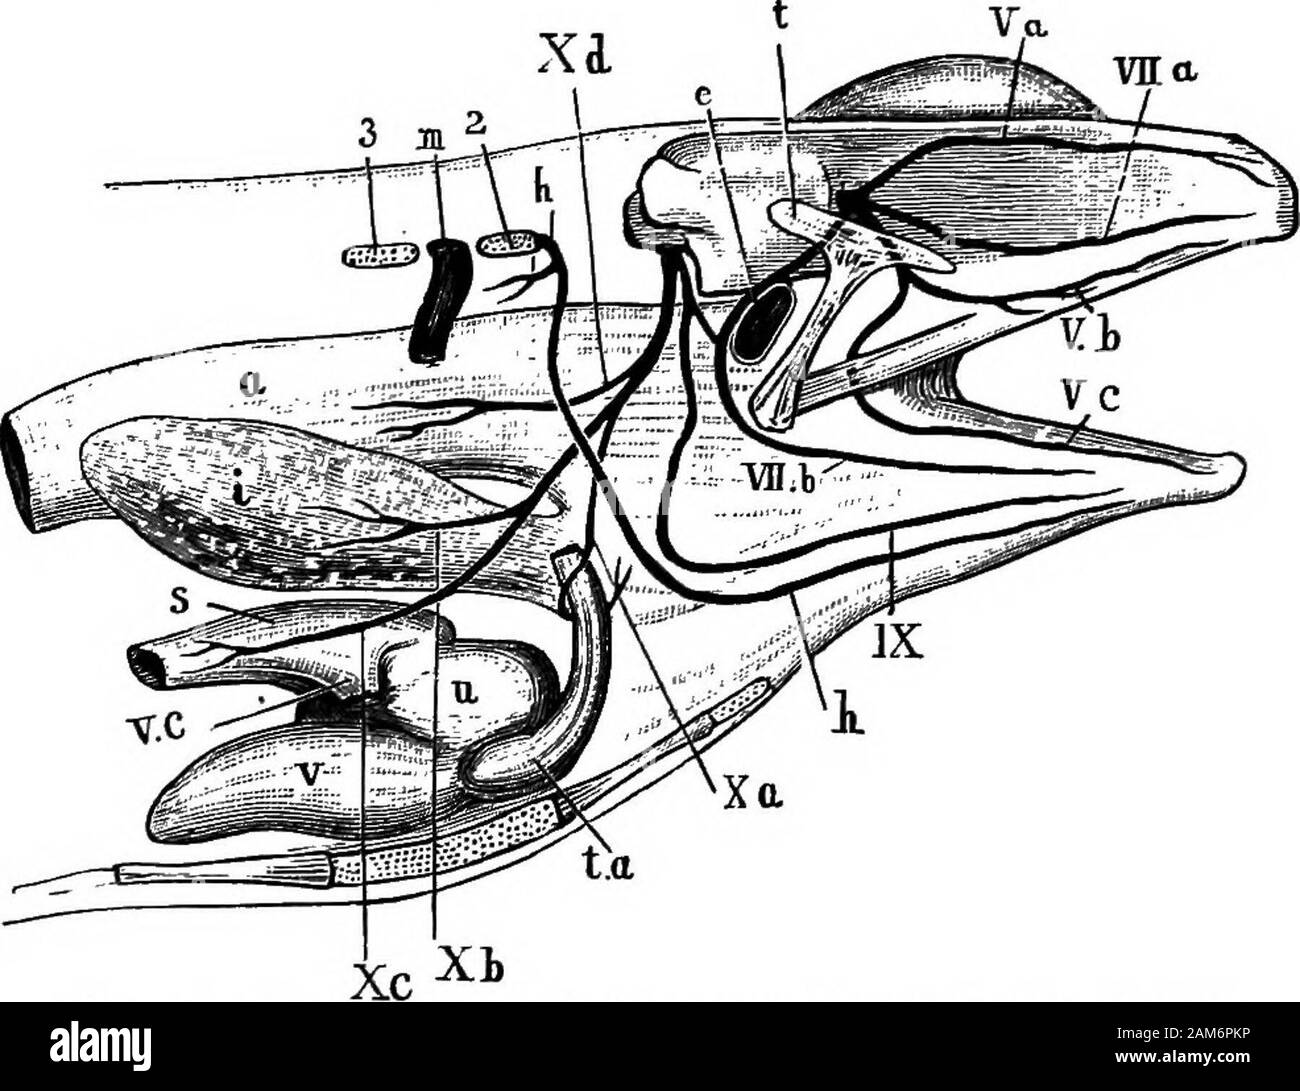 Der Frosch: eine Einführung in die Anatomie, Histologie und Embryologie. Aus den Downloadvorgang, vierte und fünfte ly Ganglien. Leber-, Nieren-, Genital, Hämorrhoidal- und vesical plexusesalso gibt es in Verbindung mit der Leber, Niere, reproductiveorgans, großer Darm und Blase. Iii. Die kranialen Nerven. Es gibt zehn paiis von cranialnerves in der Frosch, der im Auftrag von beforebackwards nummeriert sind. (Siehe Abbn. 12, 14 und 16.) 78 DAS NERVENSYSTEM DER FROSCH der kranialen Nerven zu zergliedern, setzen sie das Gehirn durch Entfernen des Dachträgers der shvM wie Al/bereit beschrieben, amd und folgen dann den specialins Stockfoto